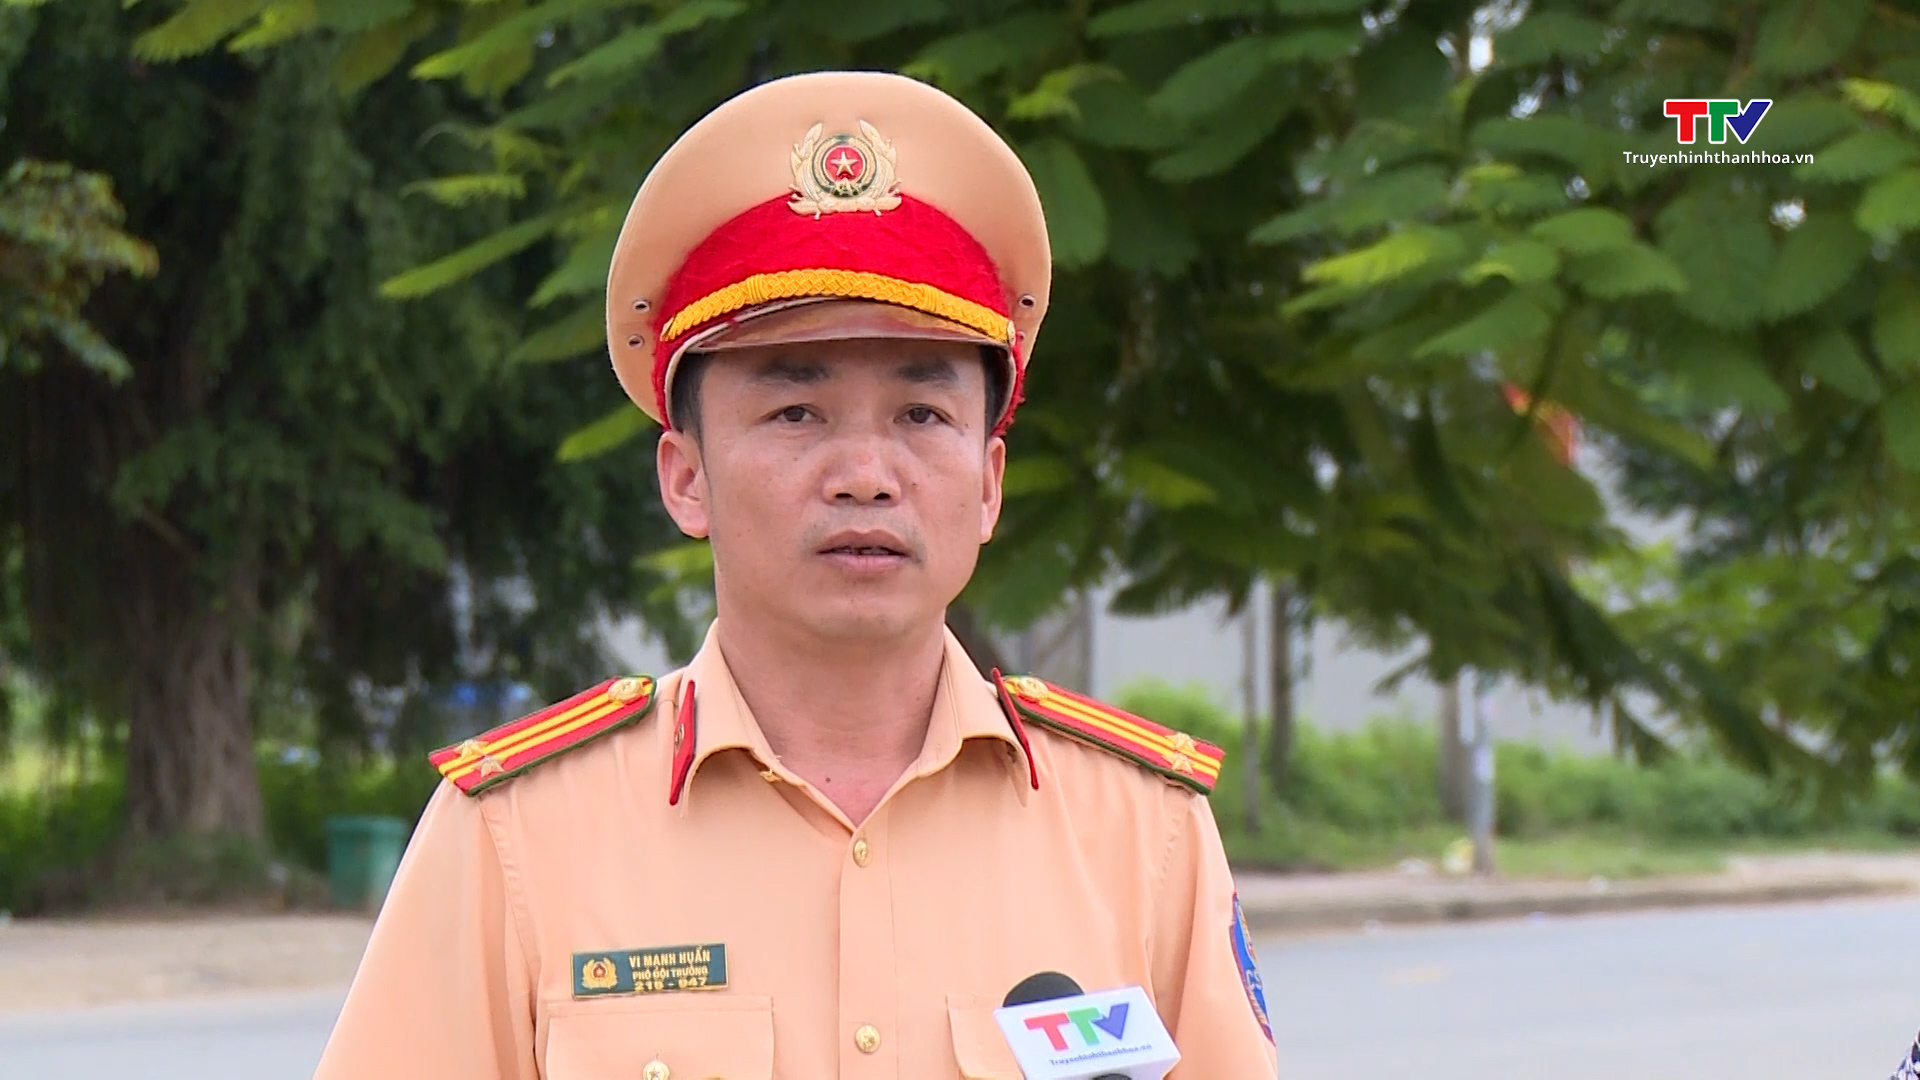 Xử lý hơn 300 trường hợp mô tô, xe gắn máy vi phạm giao thông trên địa bàn huyện Thường Xuân- Ảnh 2.